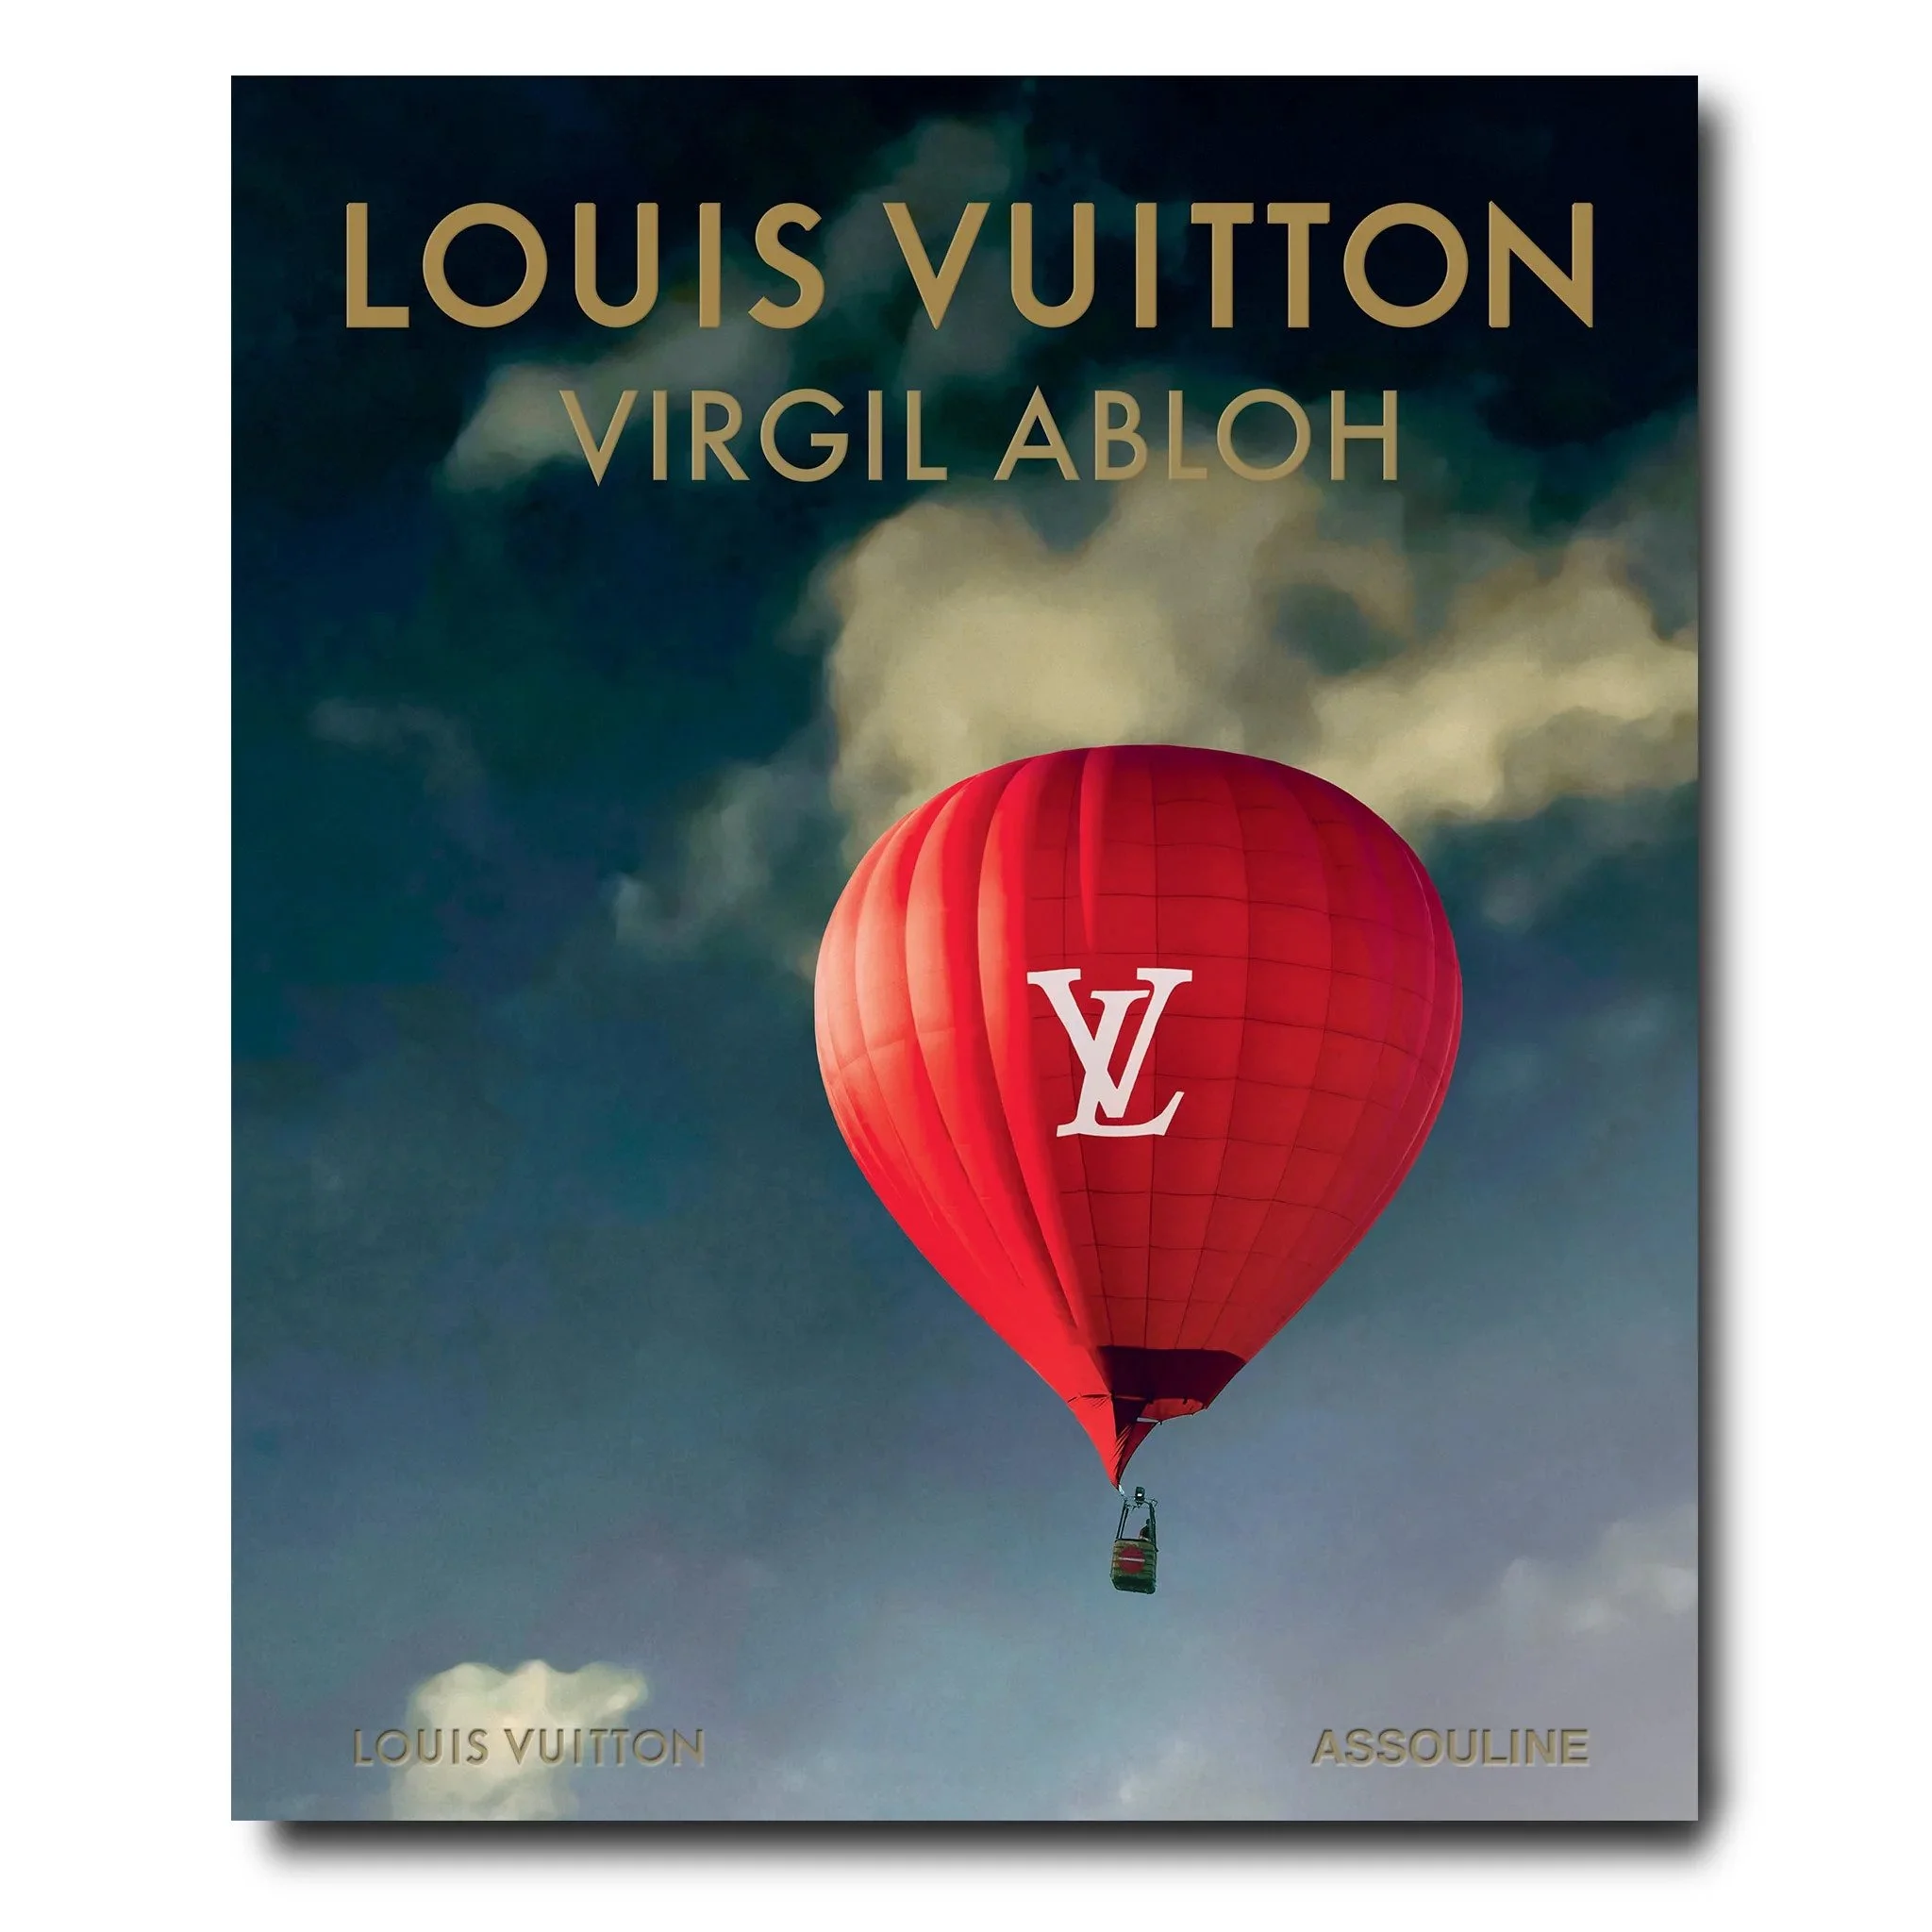 Louis Vuitton to Release Virgil Abloh Archive